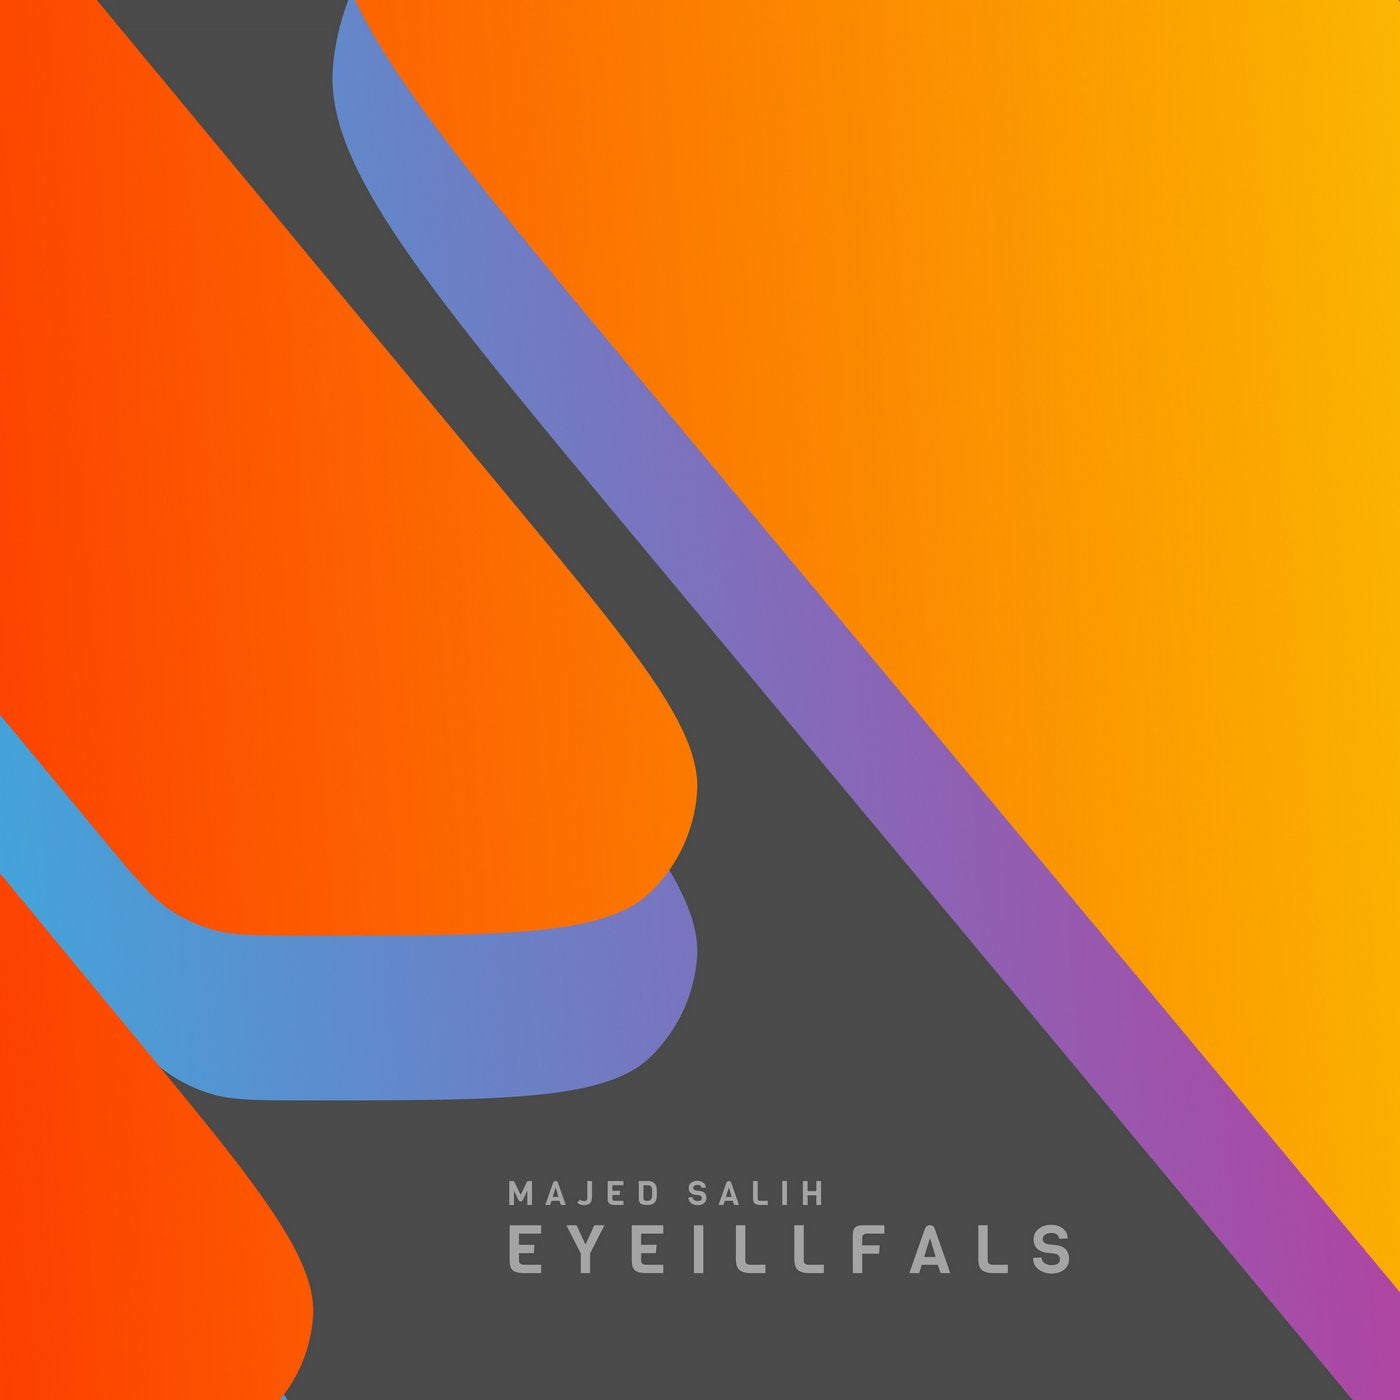 Eyeillfals